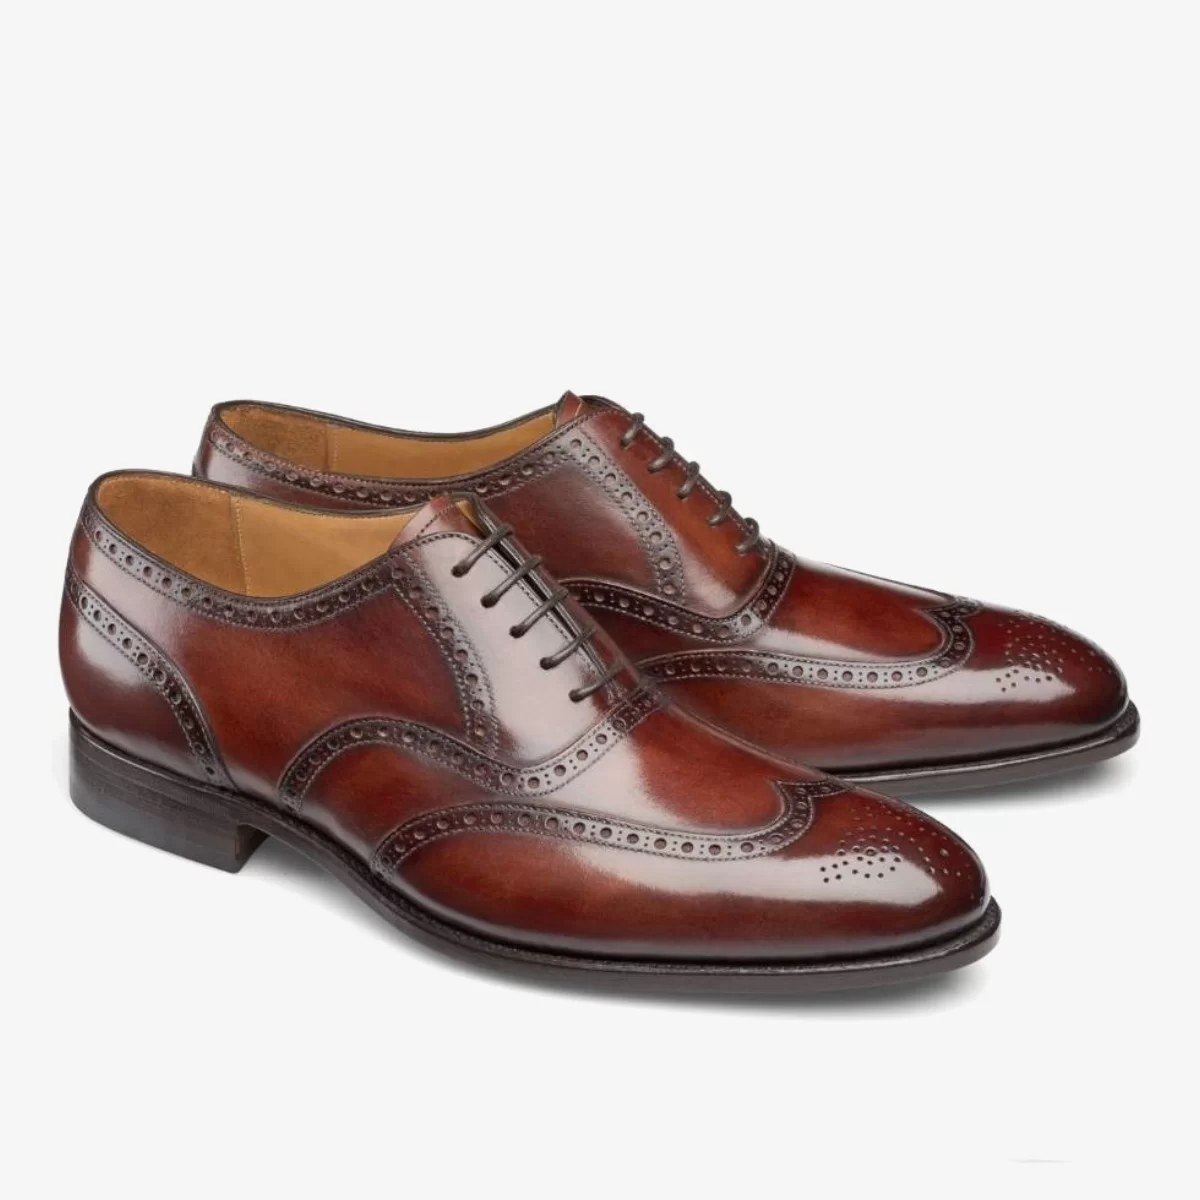 Carlos Santos 7273 Frank burgundy brogue men's oxford shoes